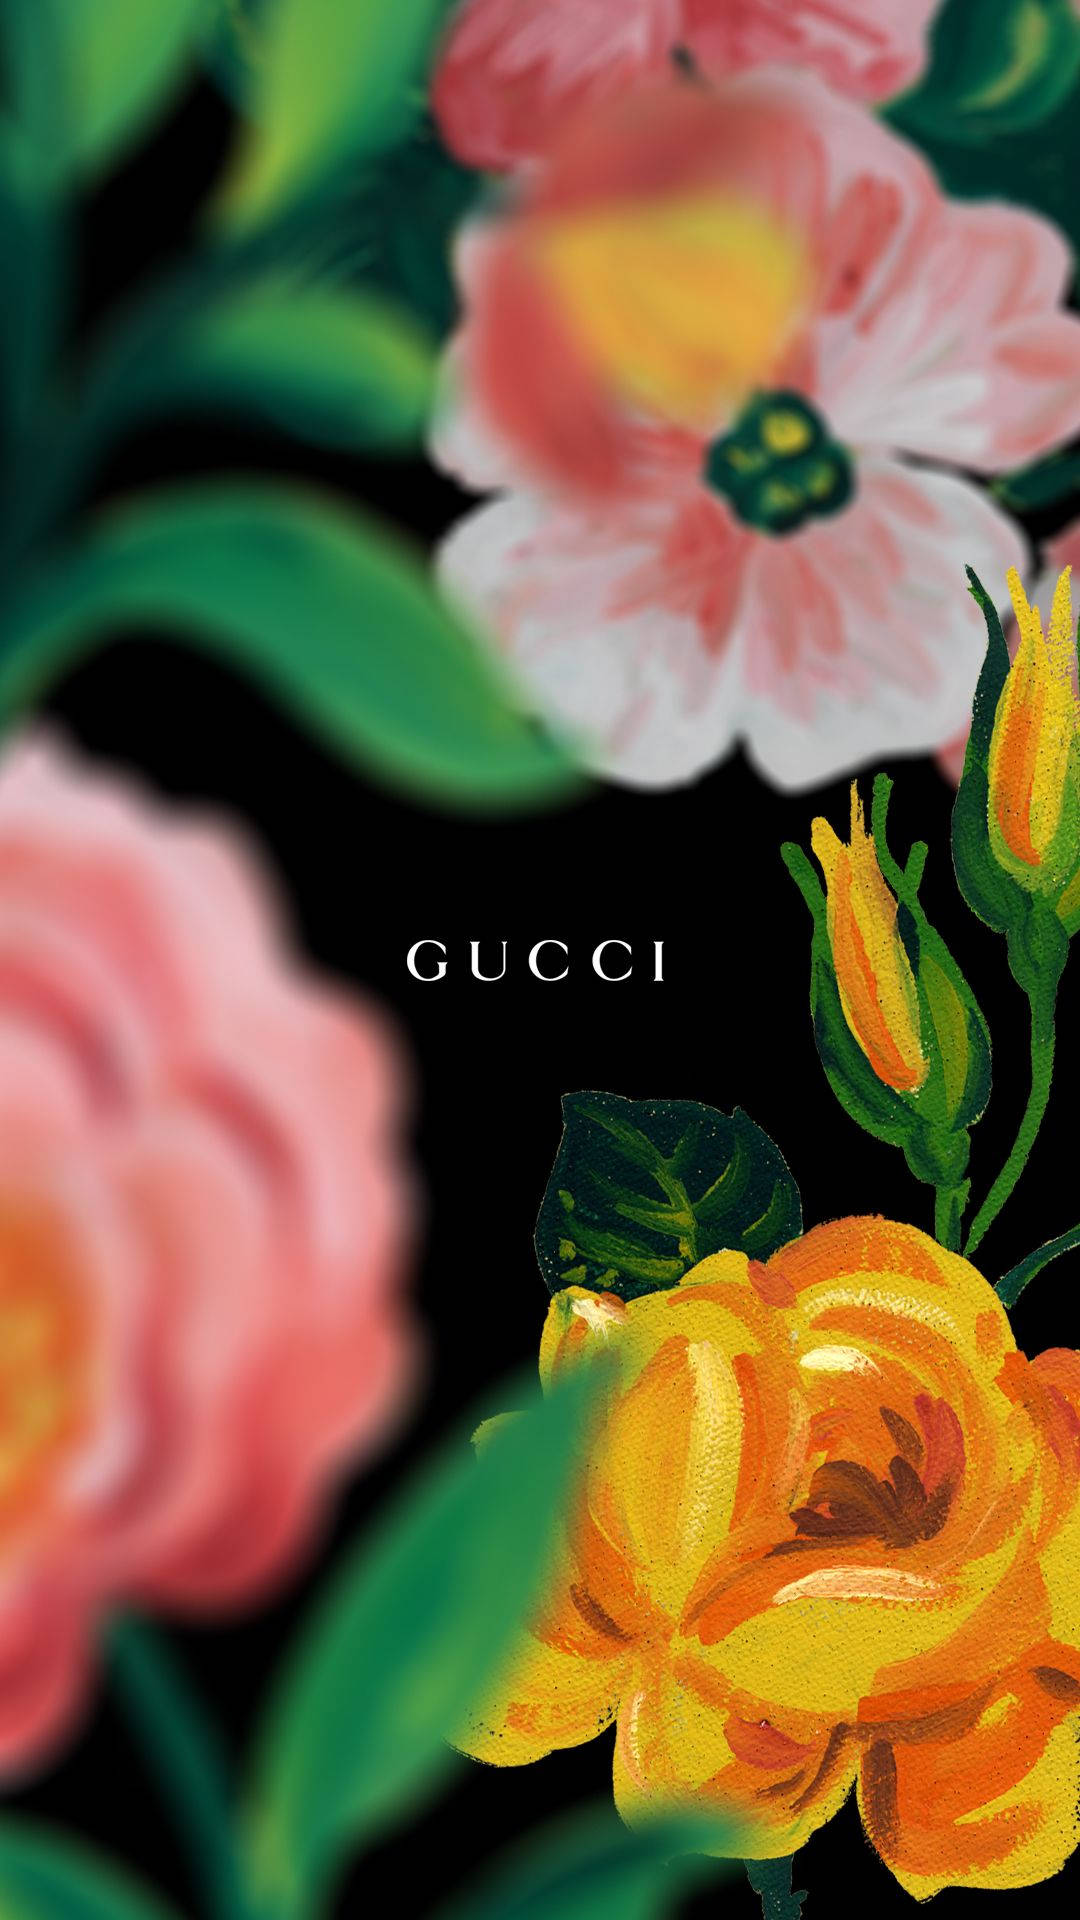 Gucci - Gucci - Gucci - Gucci - Gucci - Gucci - Gu Background